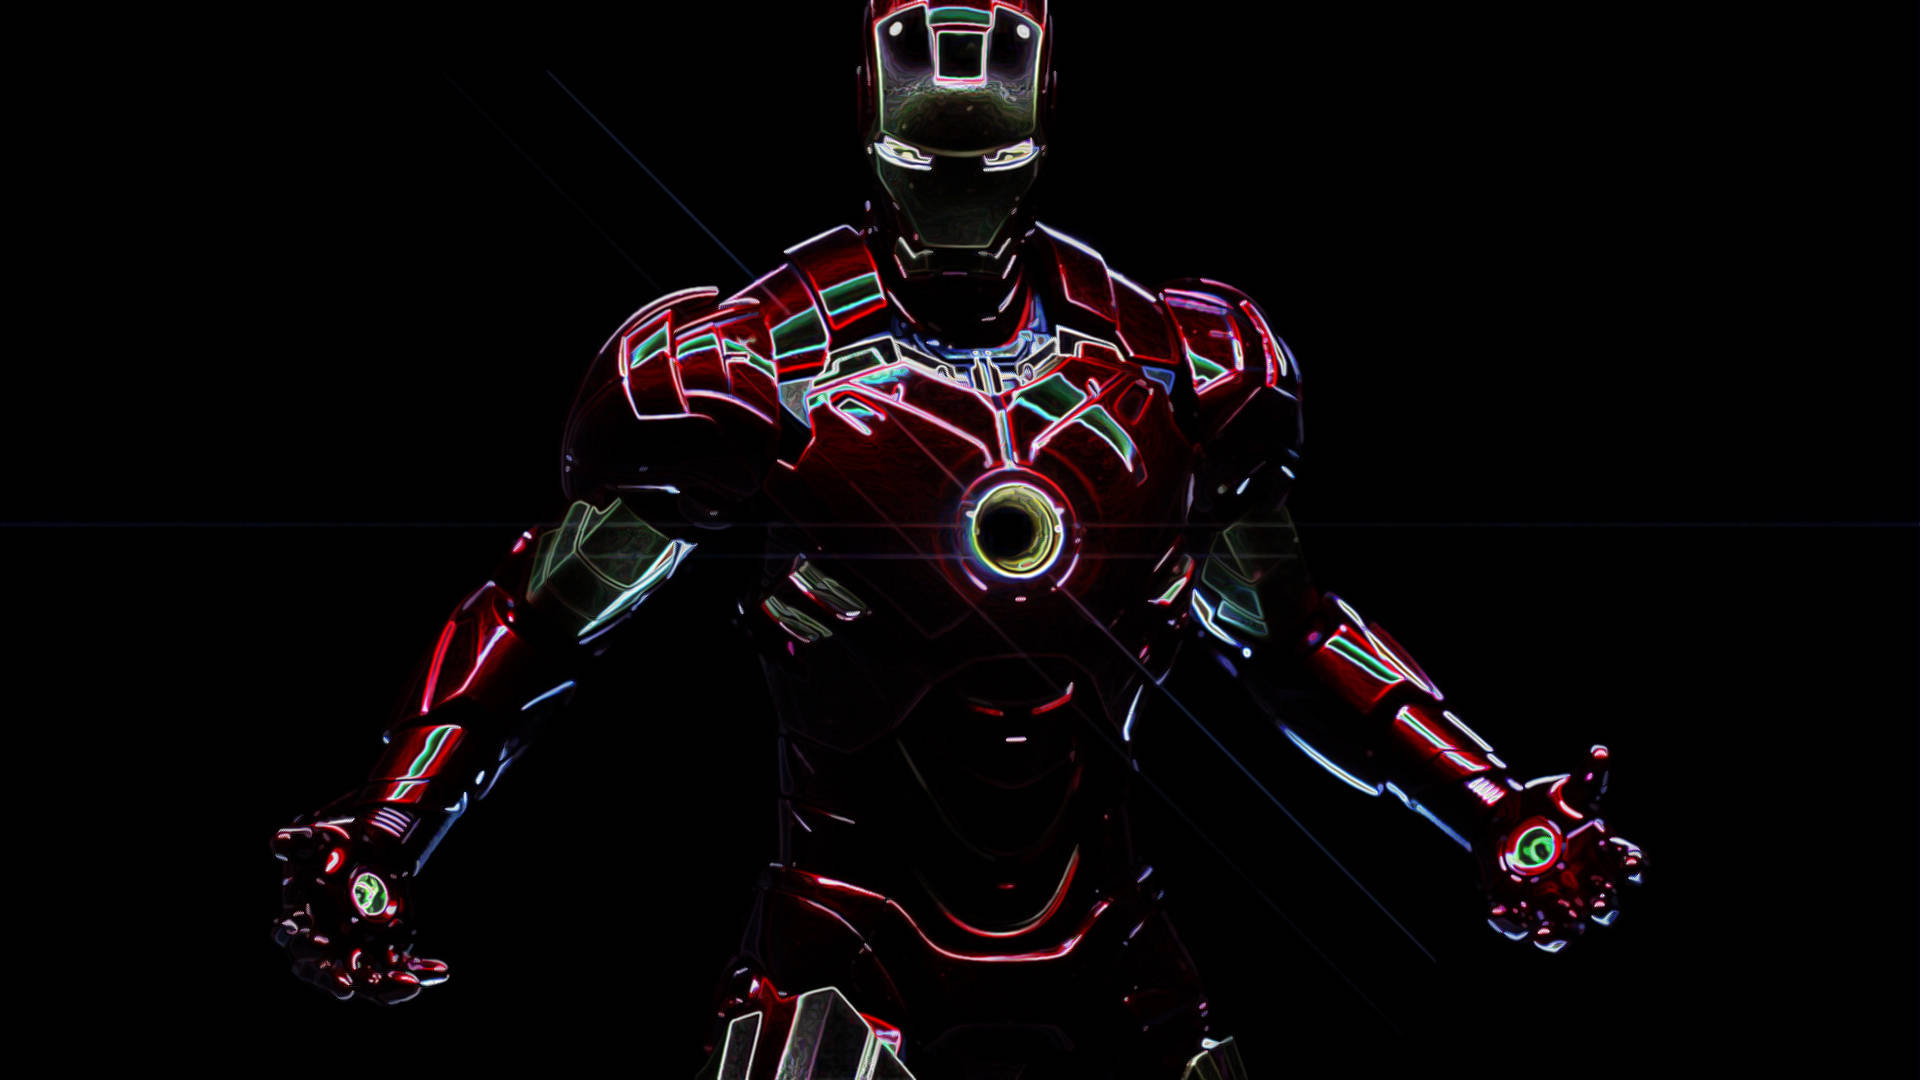 Papelde Parede De Alta Definição Do Super-herói Da Marvel, Ironman Brilhante. Papel de Parede